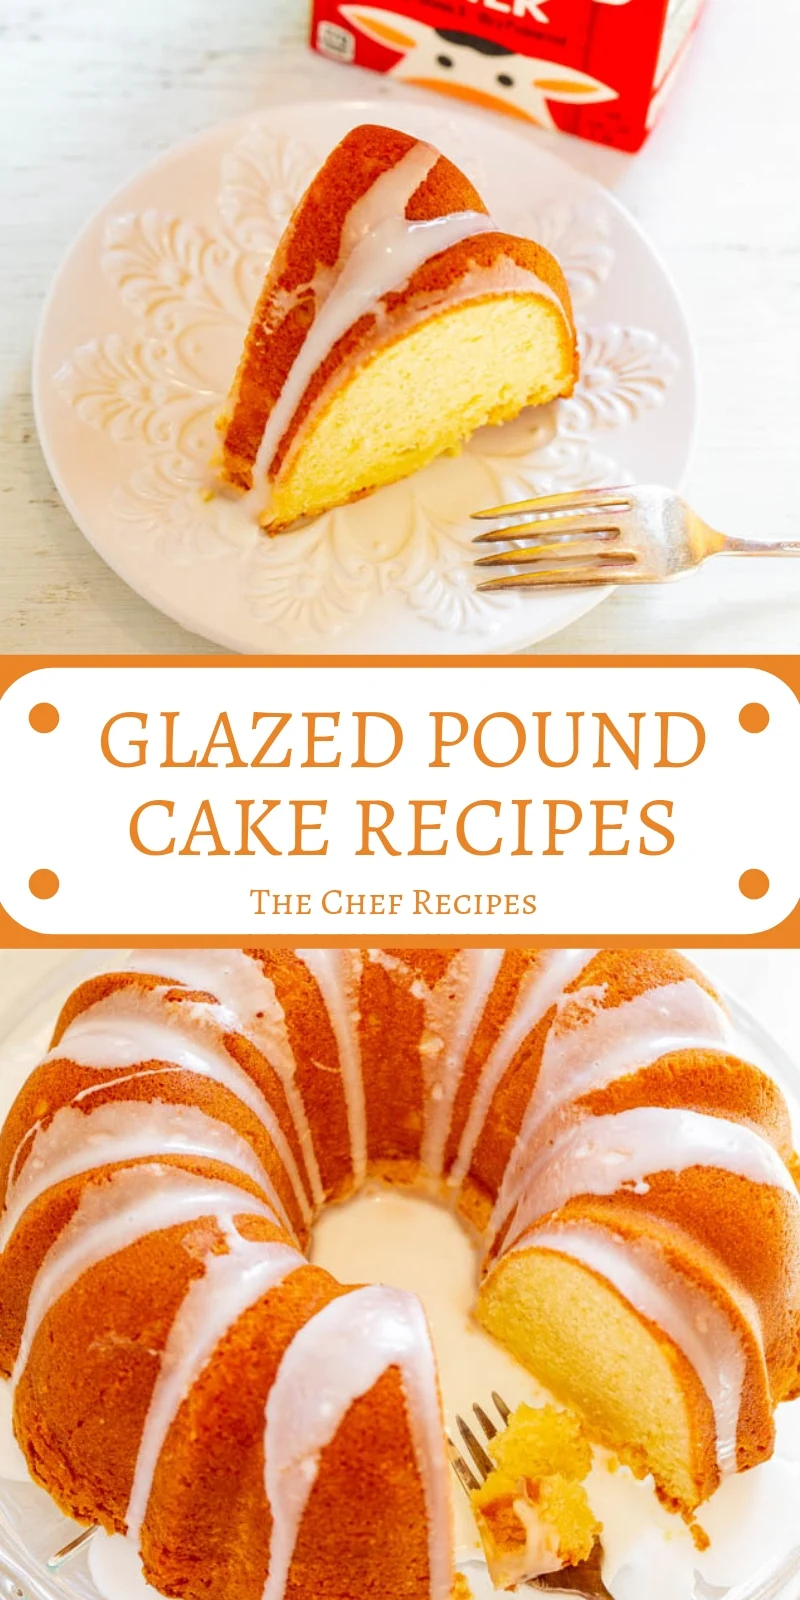 GLAZED POUND CAKE RECIPES